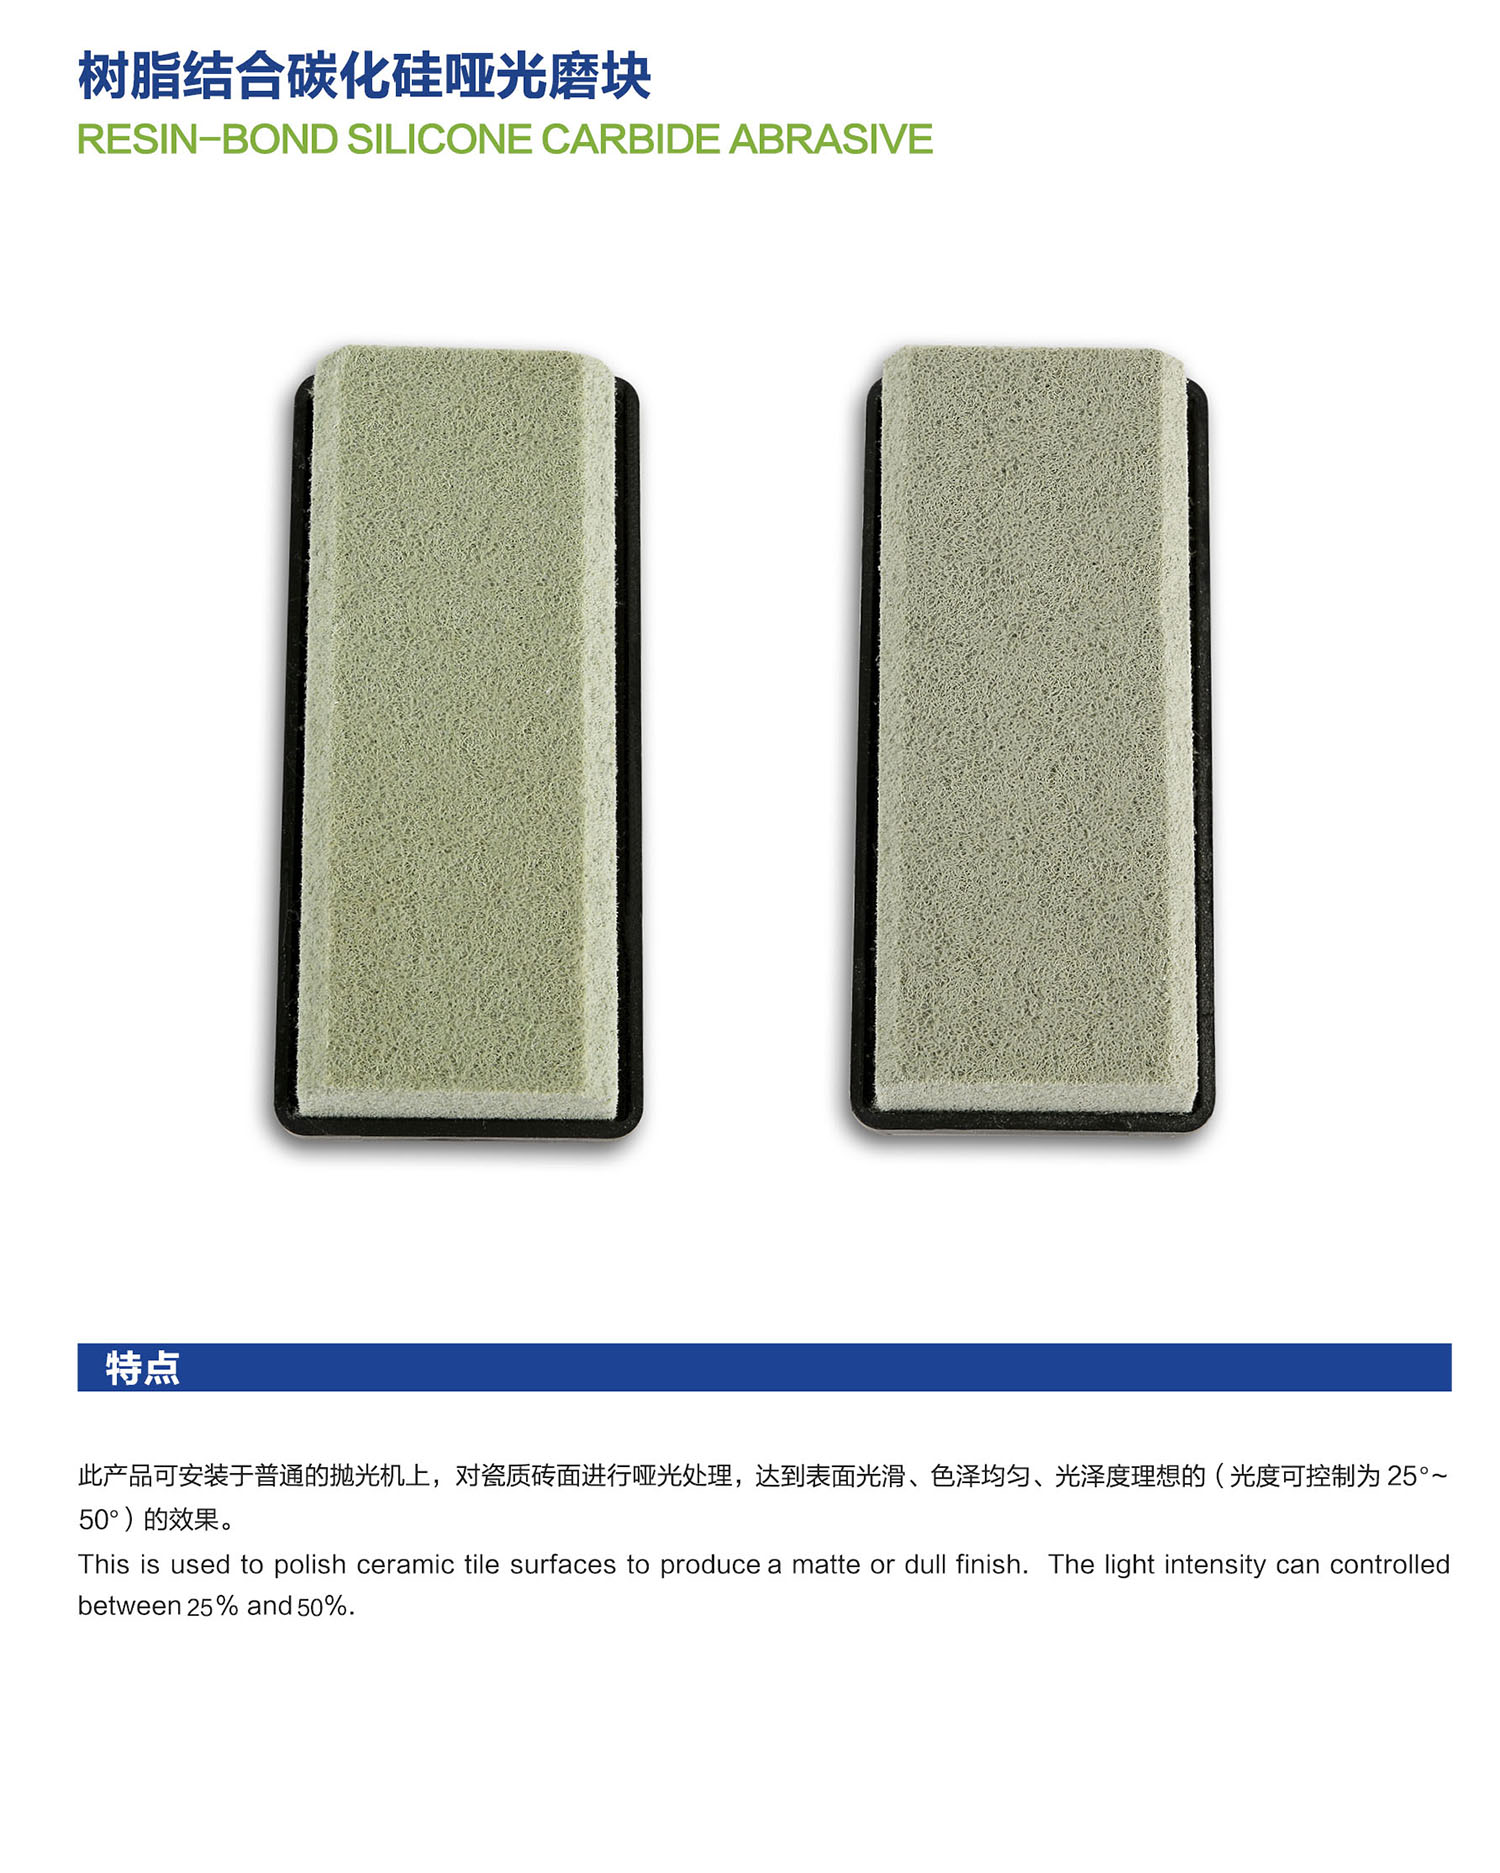 09树脂结合碳化硅哑光磨块Resin-Bond Silicone carbide Abrasive.jpg